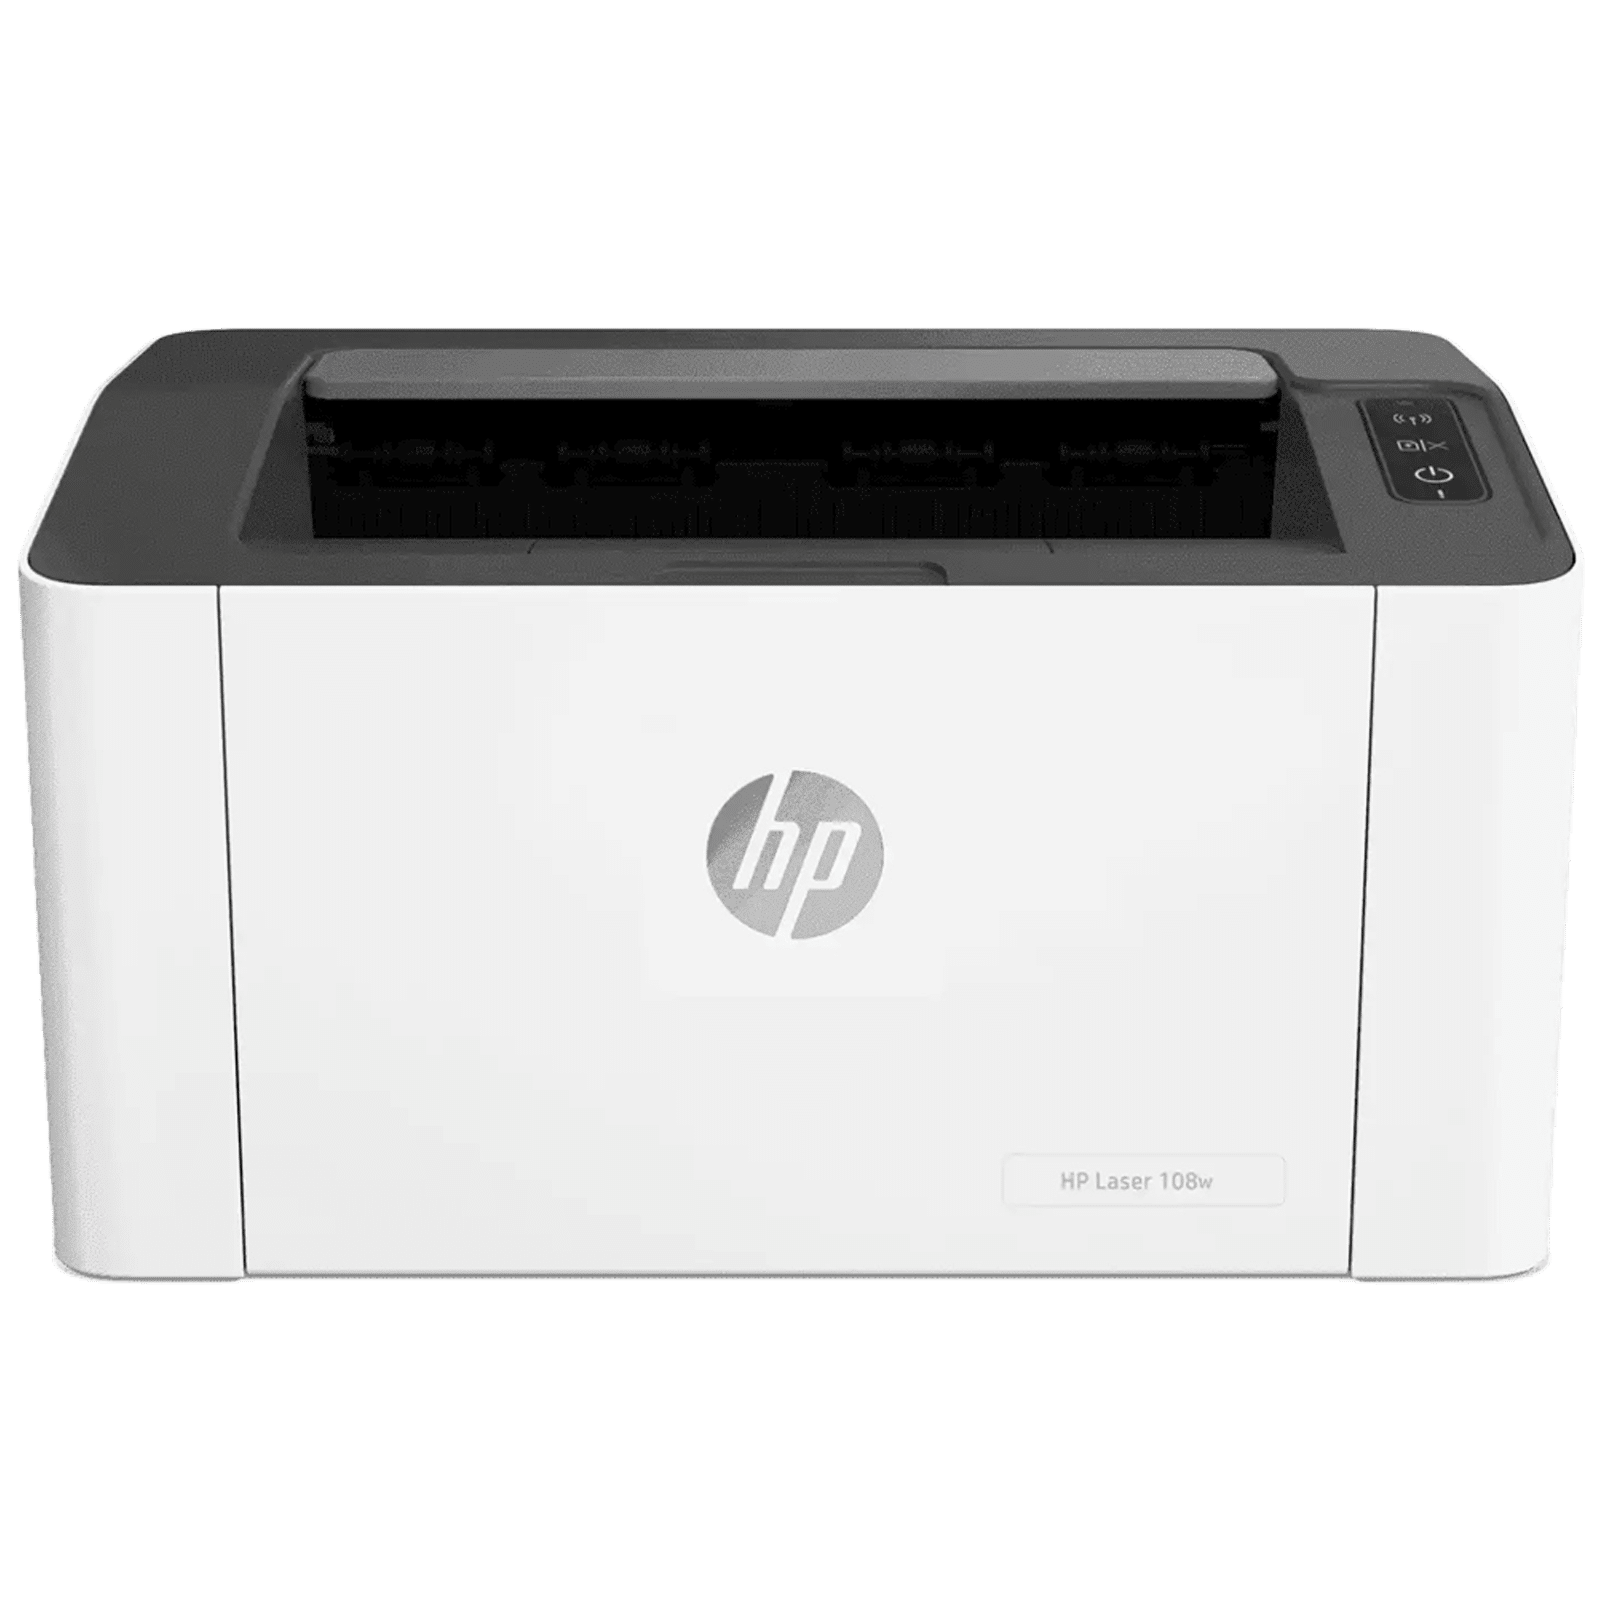 Buy HP Laser 108w Wireless Black & Laserjet Printer (Wi-Fi 4ZB80A, White) Online - Croma